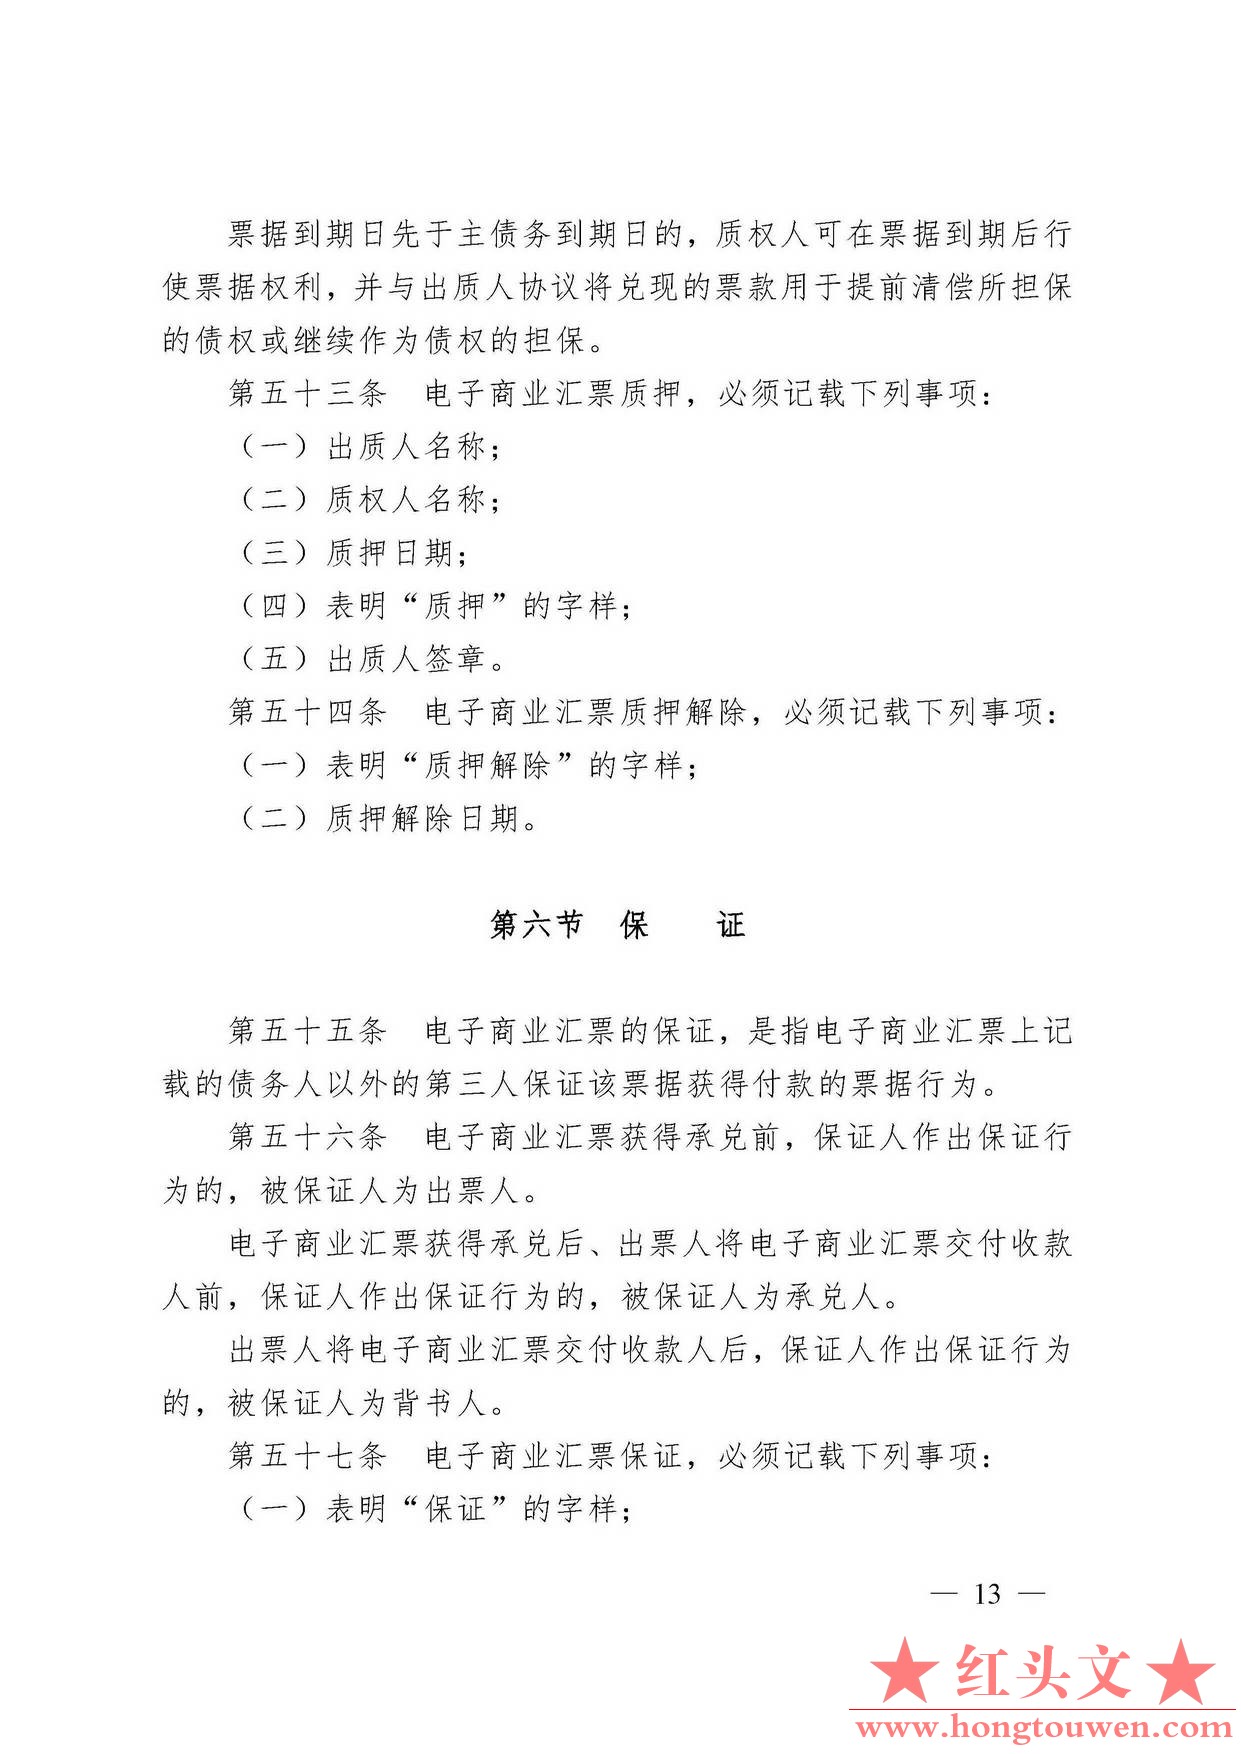 中国人民银行令[2009]2号-电子商业汇票管理办法_页面_13.jpg